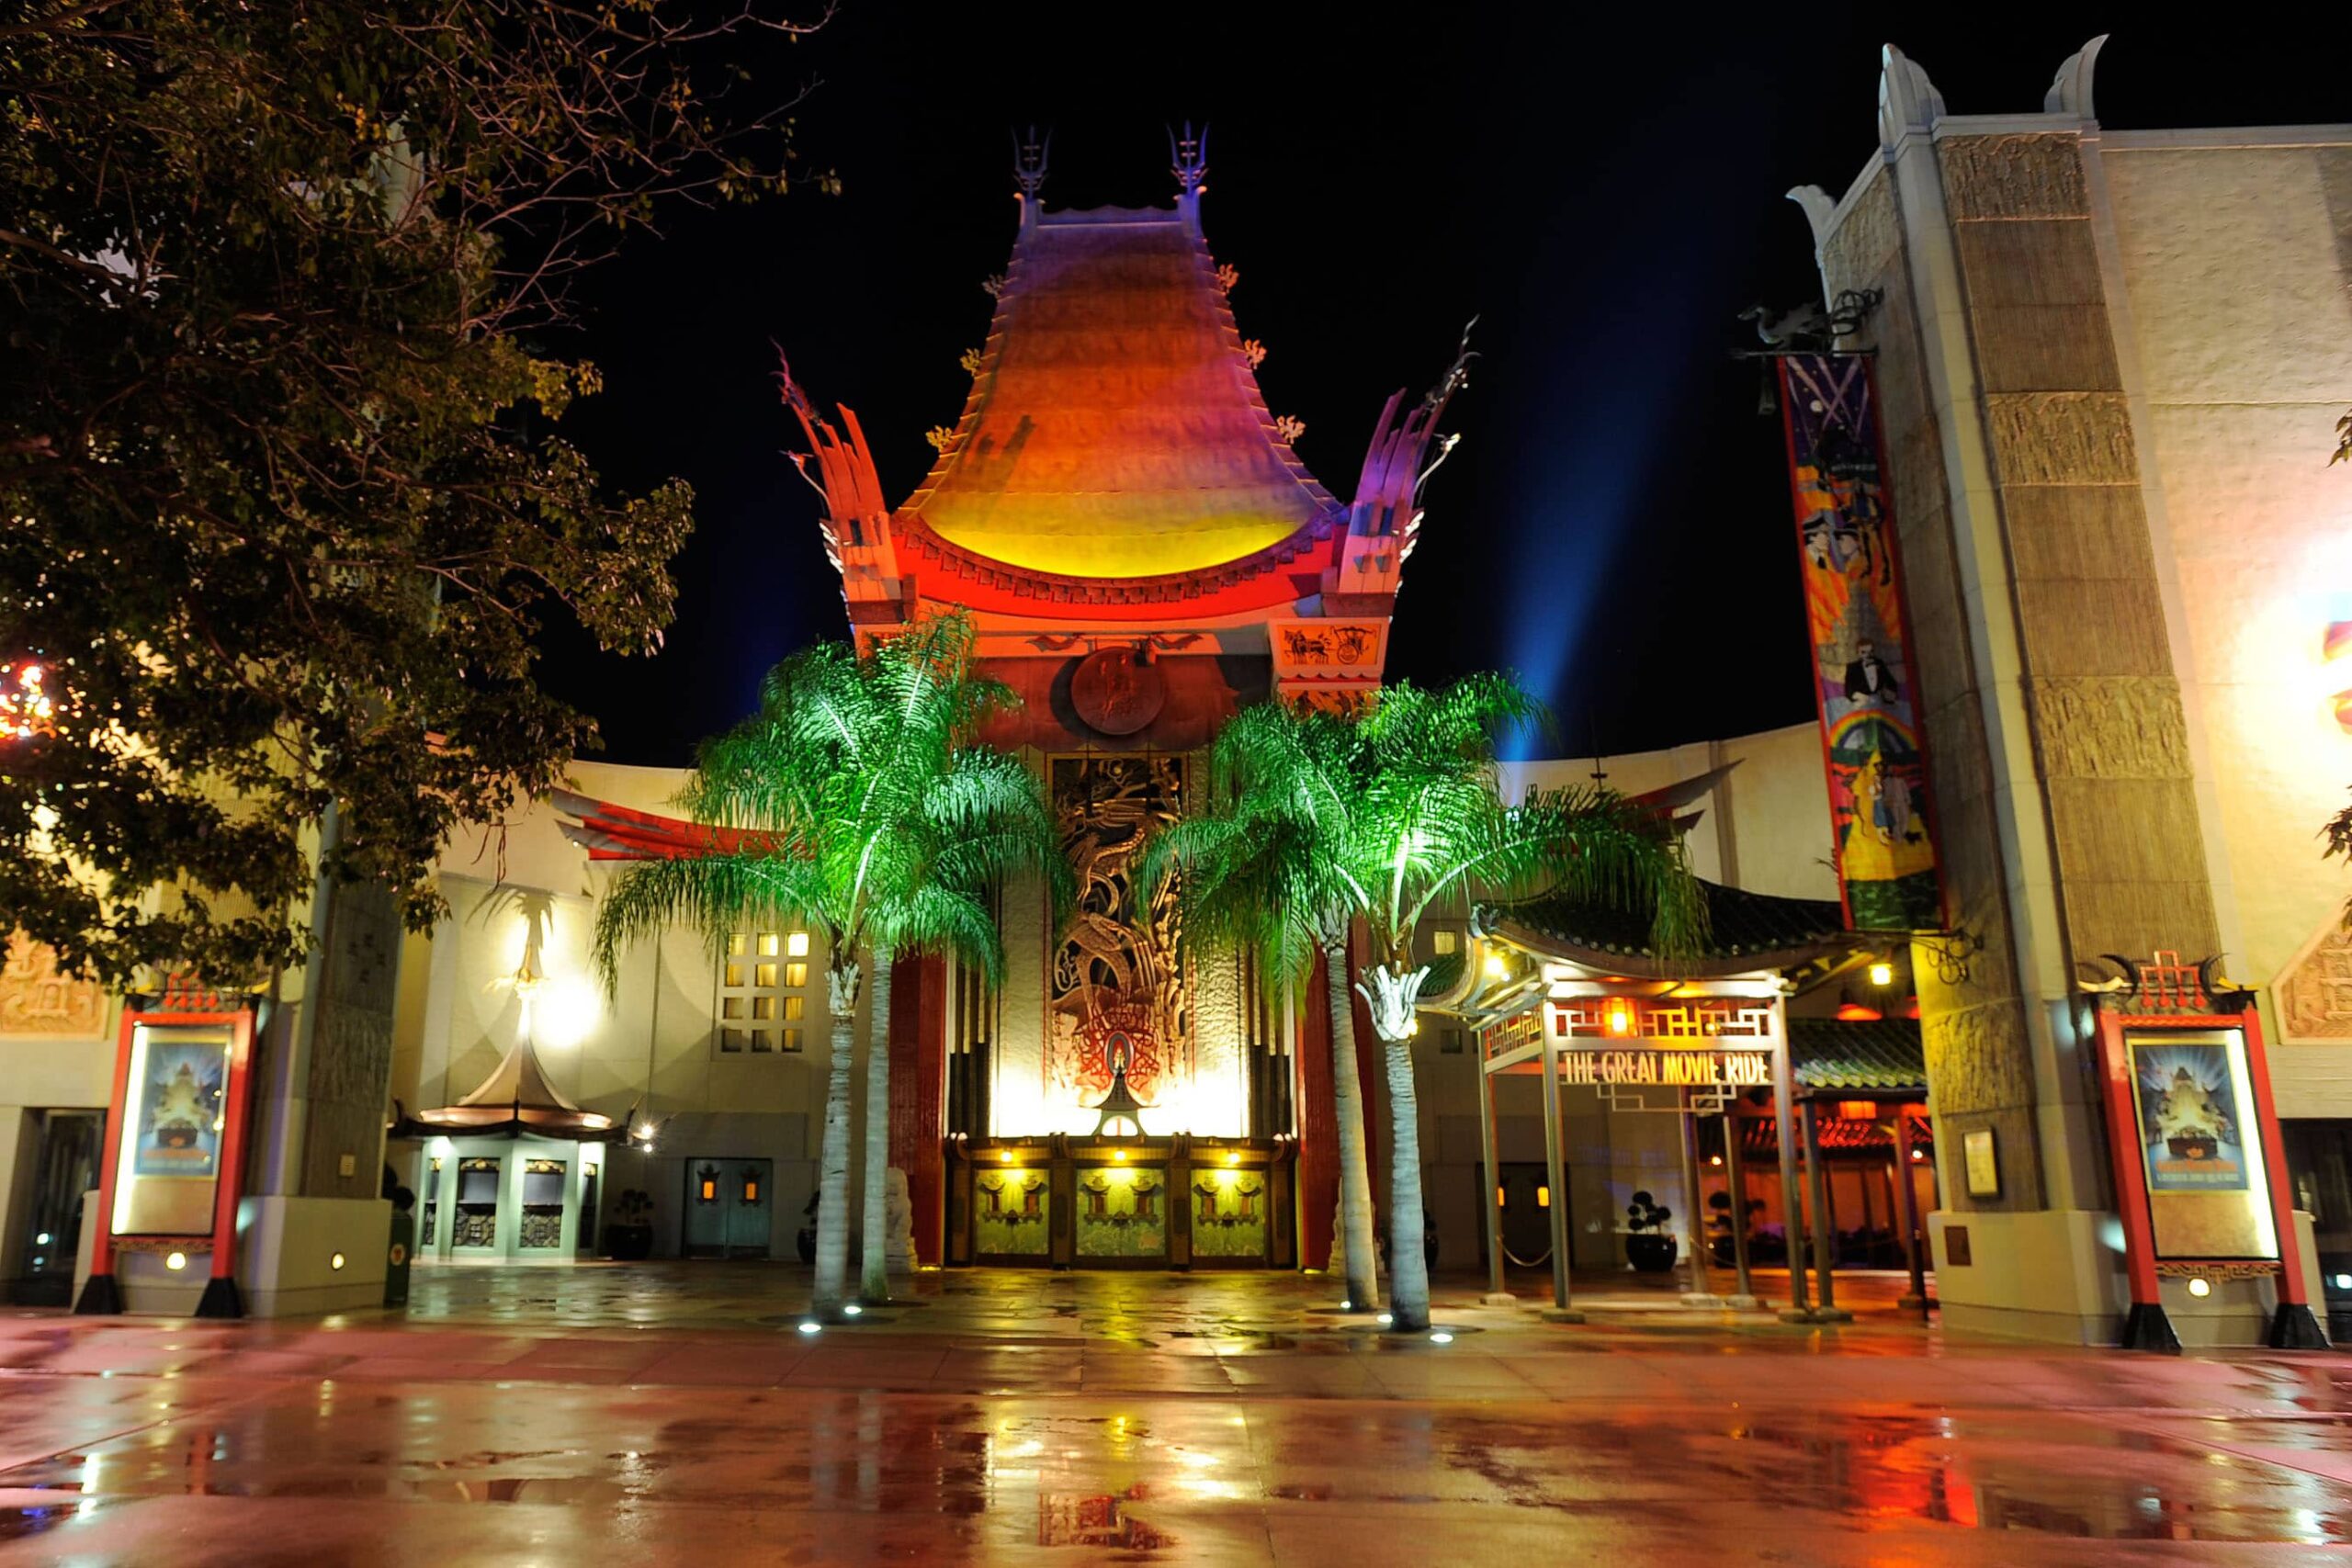 ¿The Great Movie Ride cerrará pronto en Disney's Hollywood Studios?